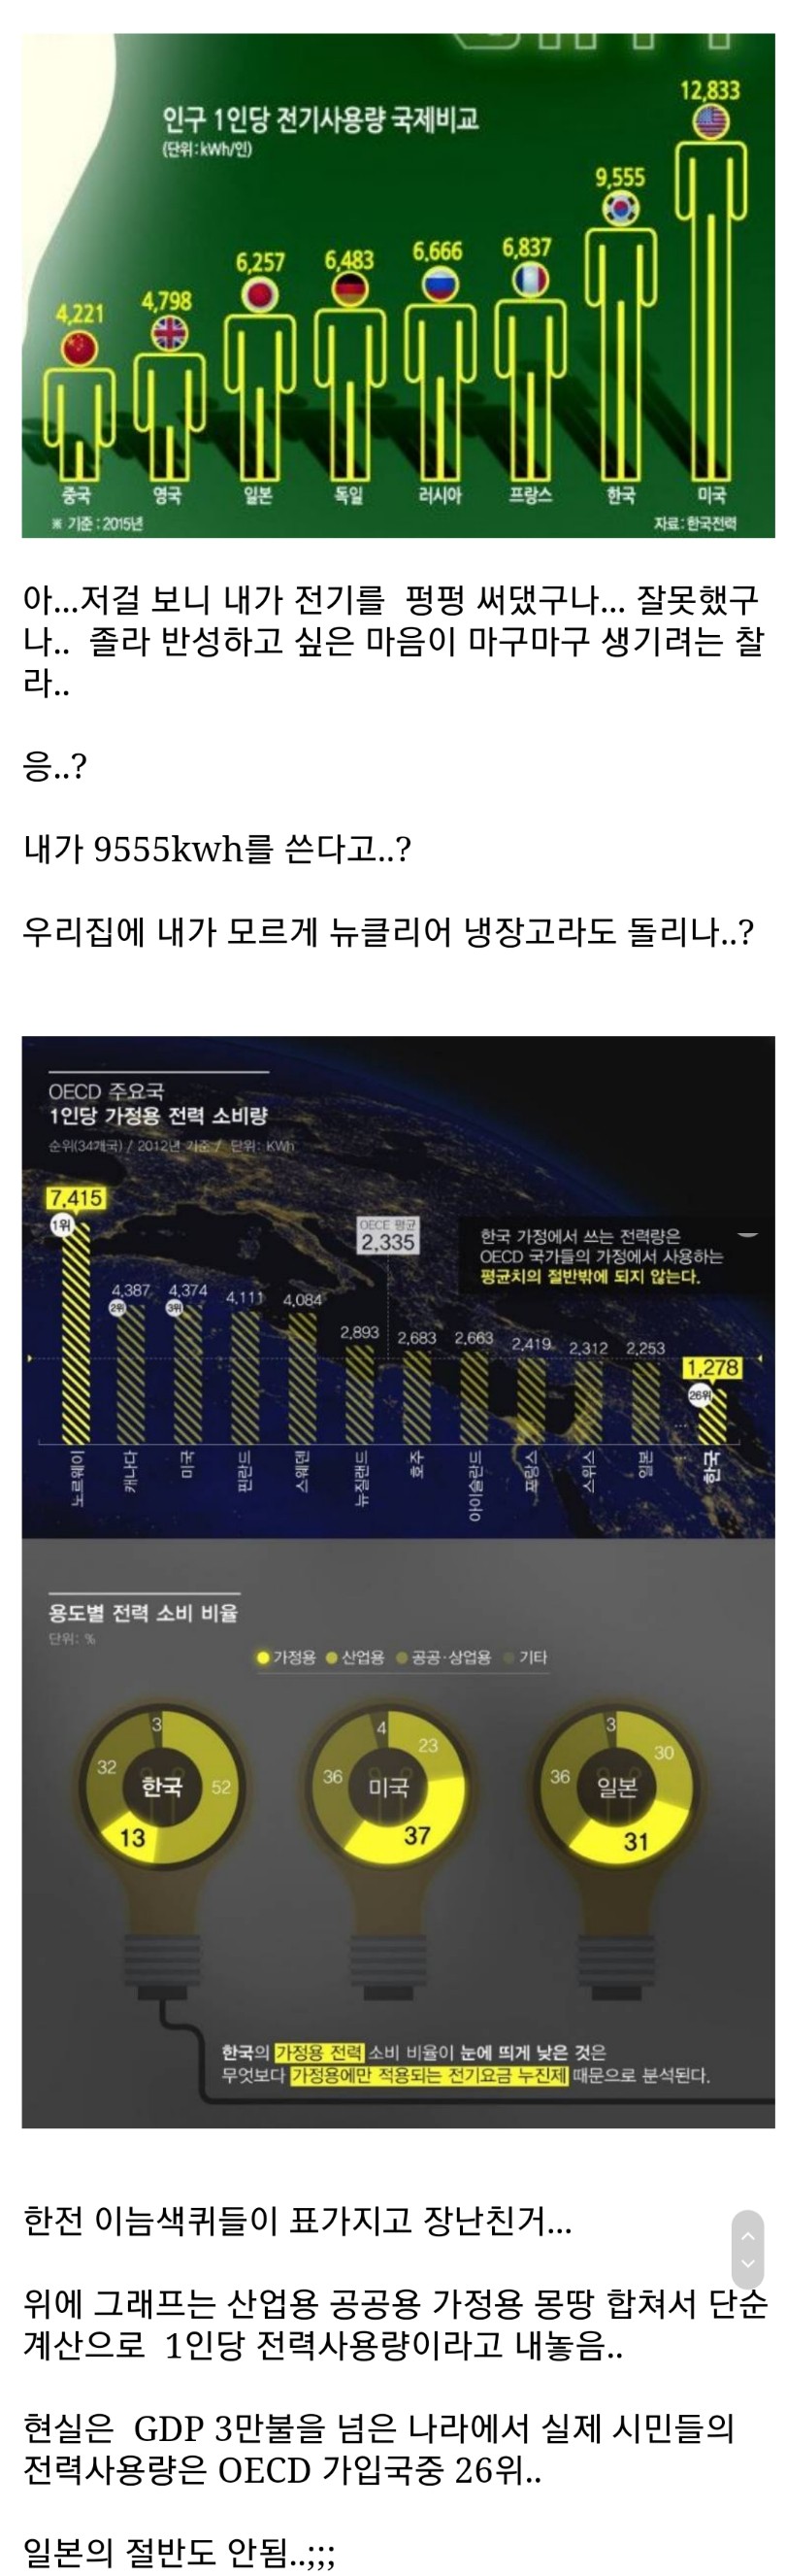 1인당 전력사용량 한국이 세계 2위1.jpg